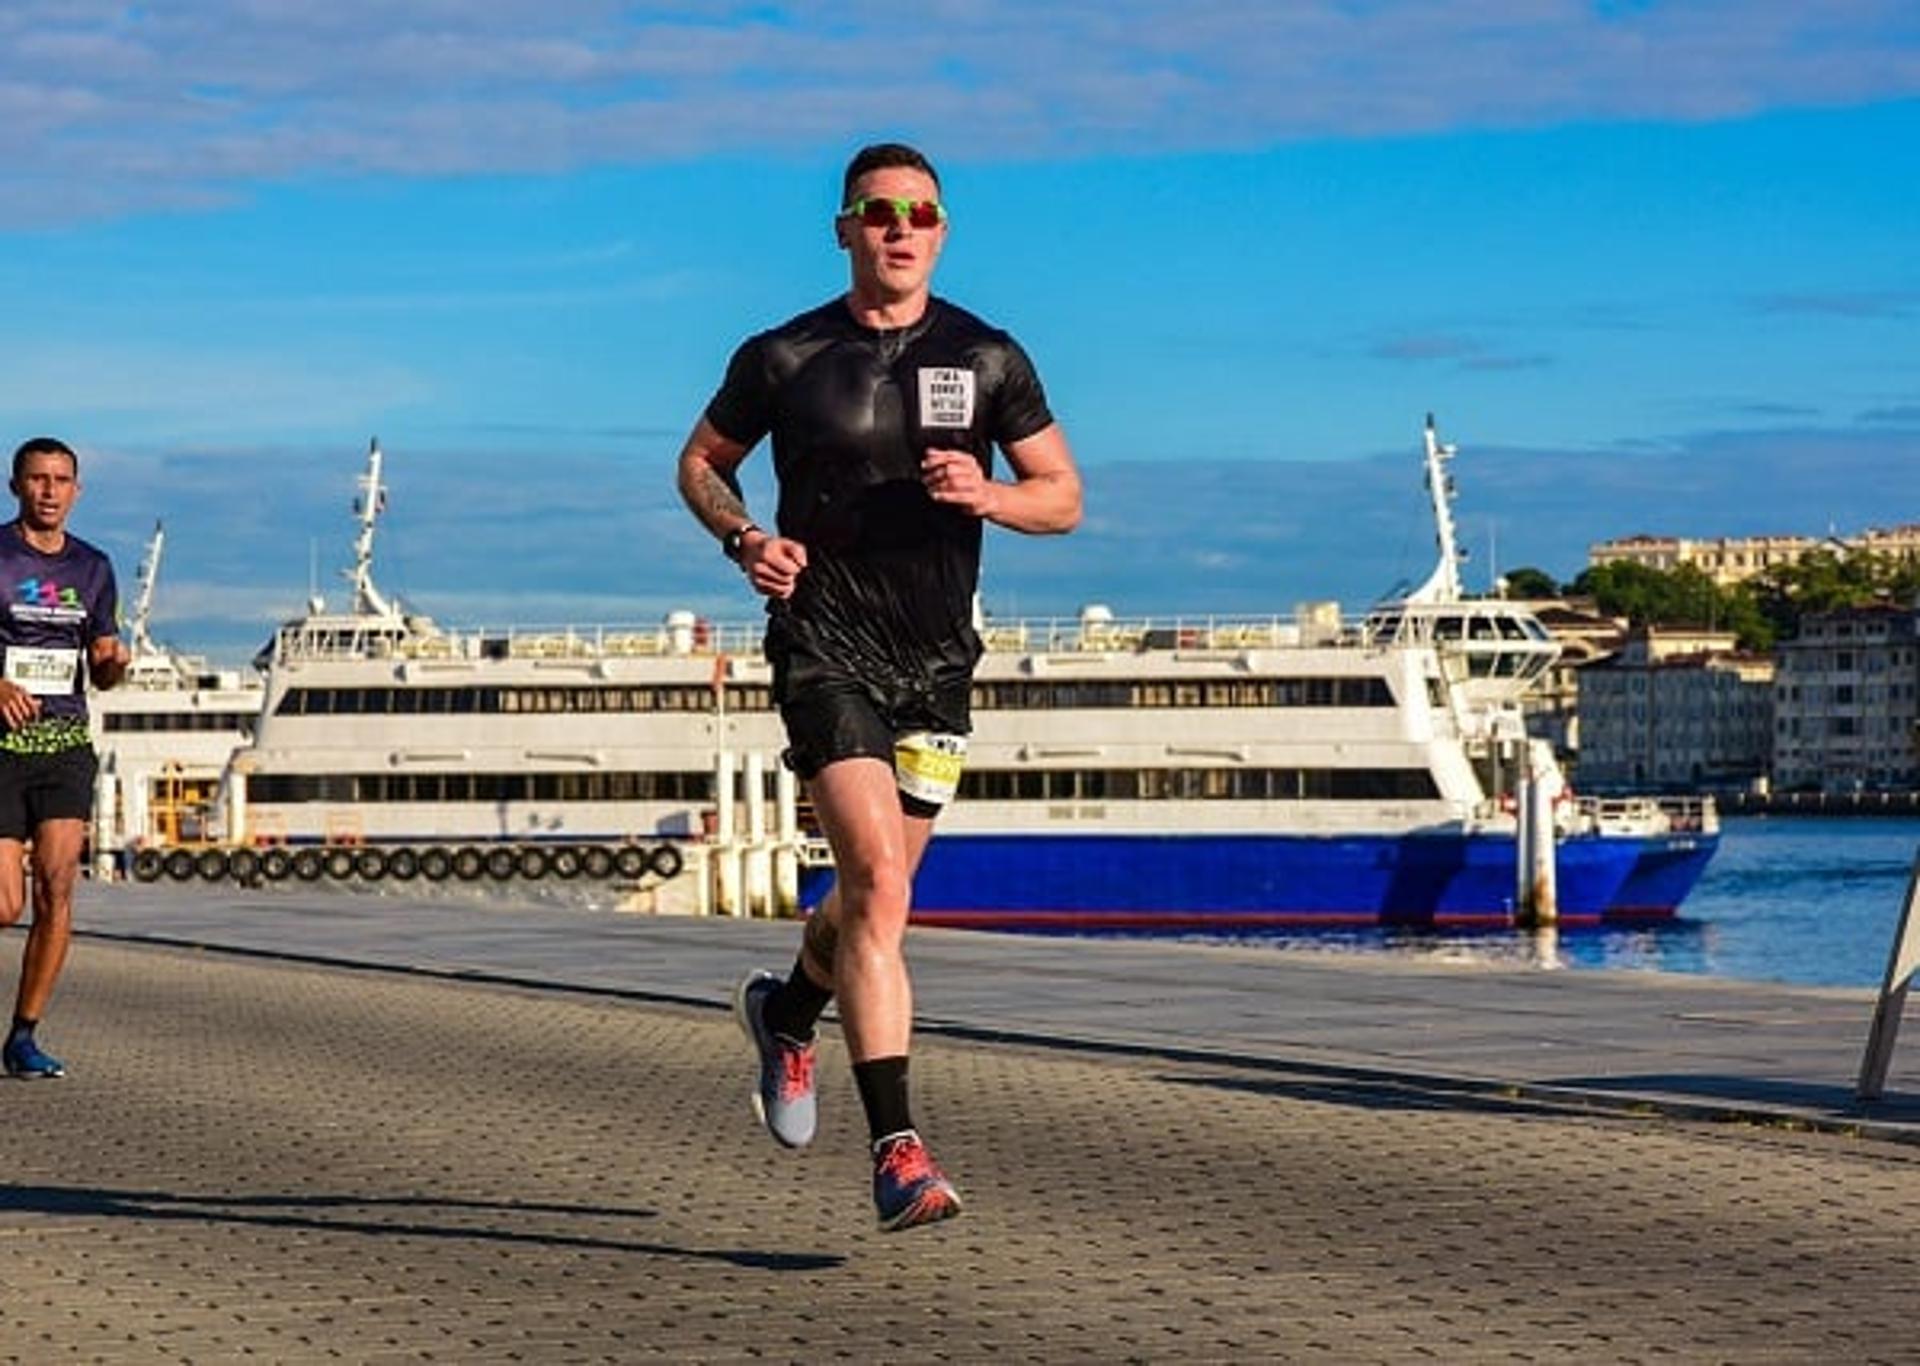 Filho de um ultramaratonista e uma maratonista, Yann Rodrigues foi apresentado ainda muito novo às pistas. (Divulgação)